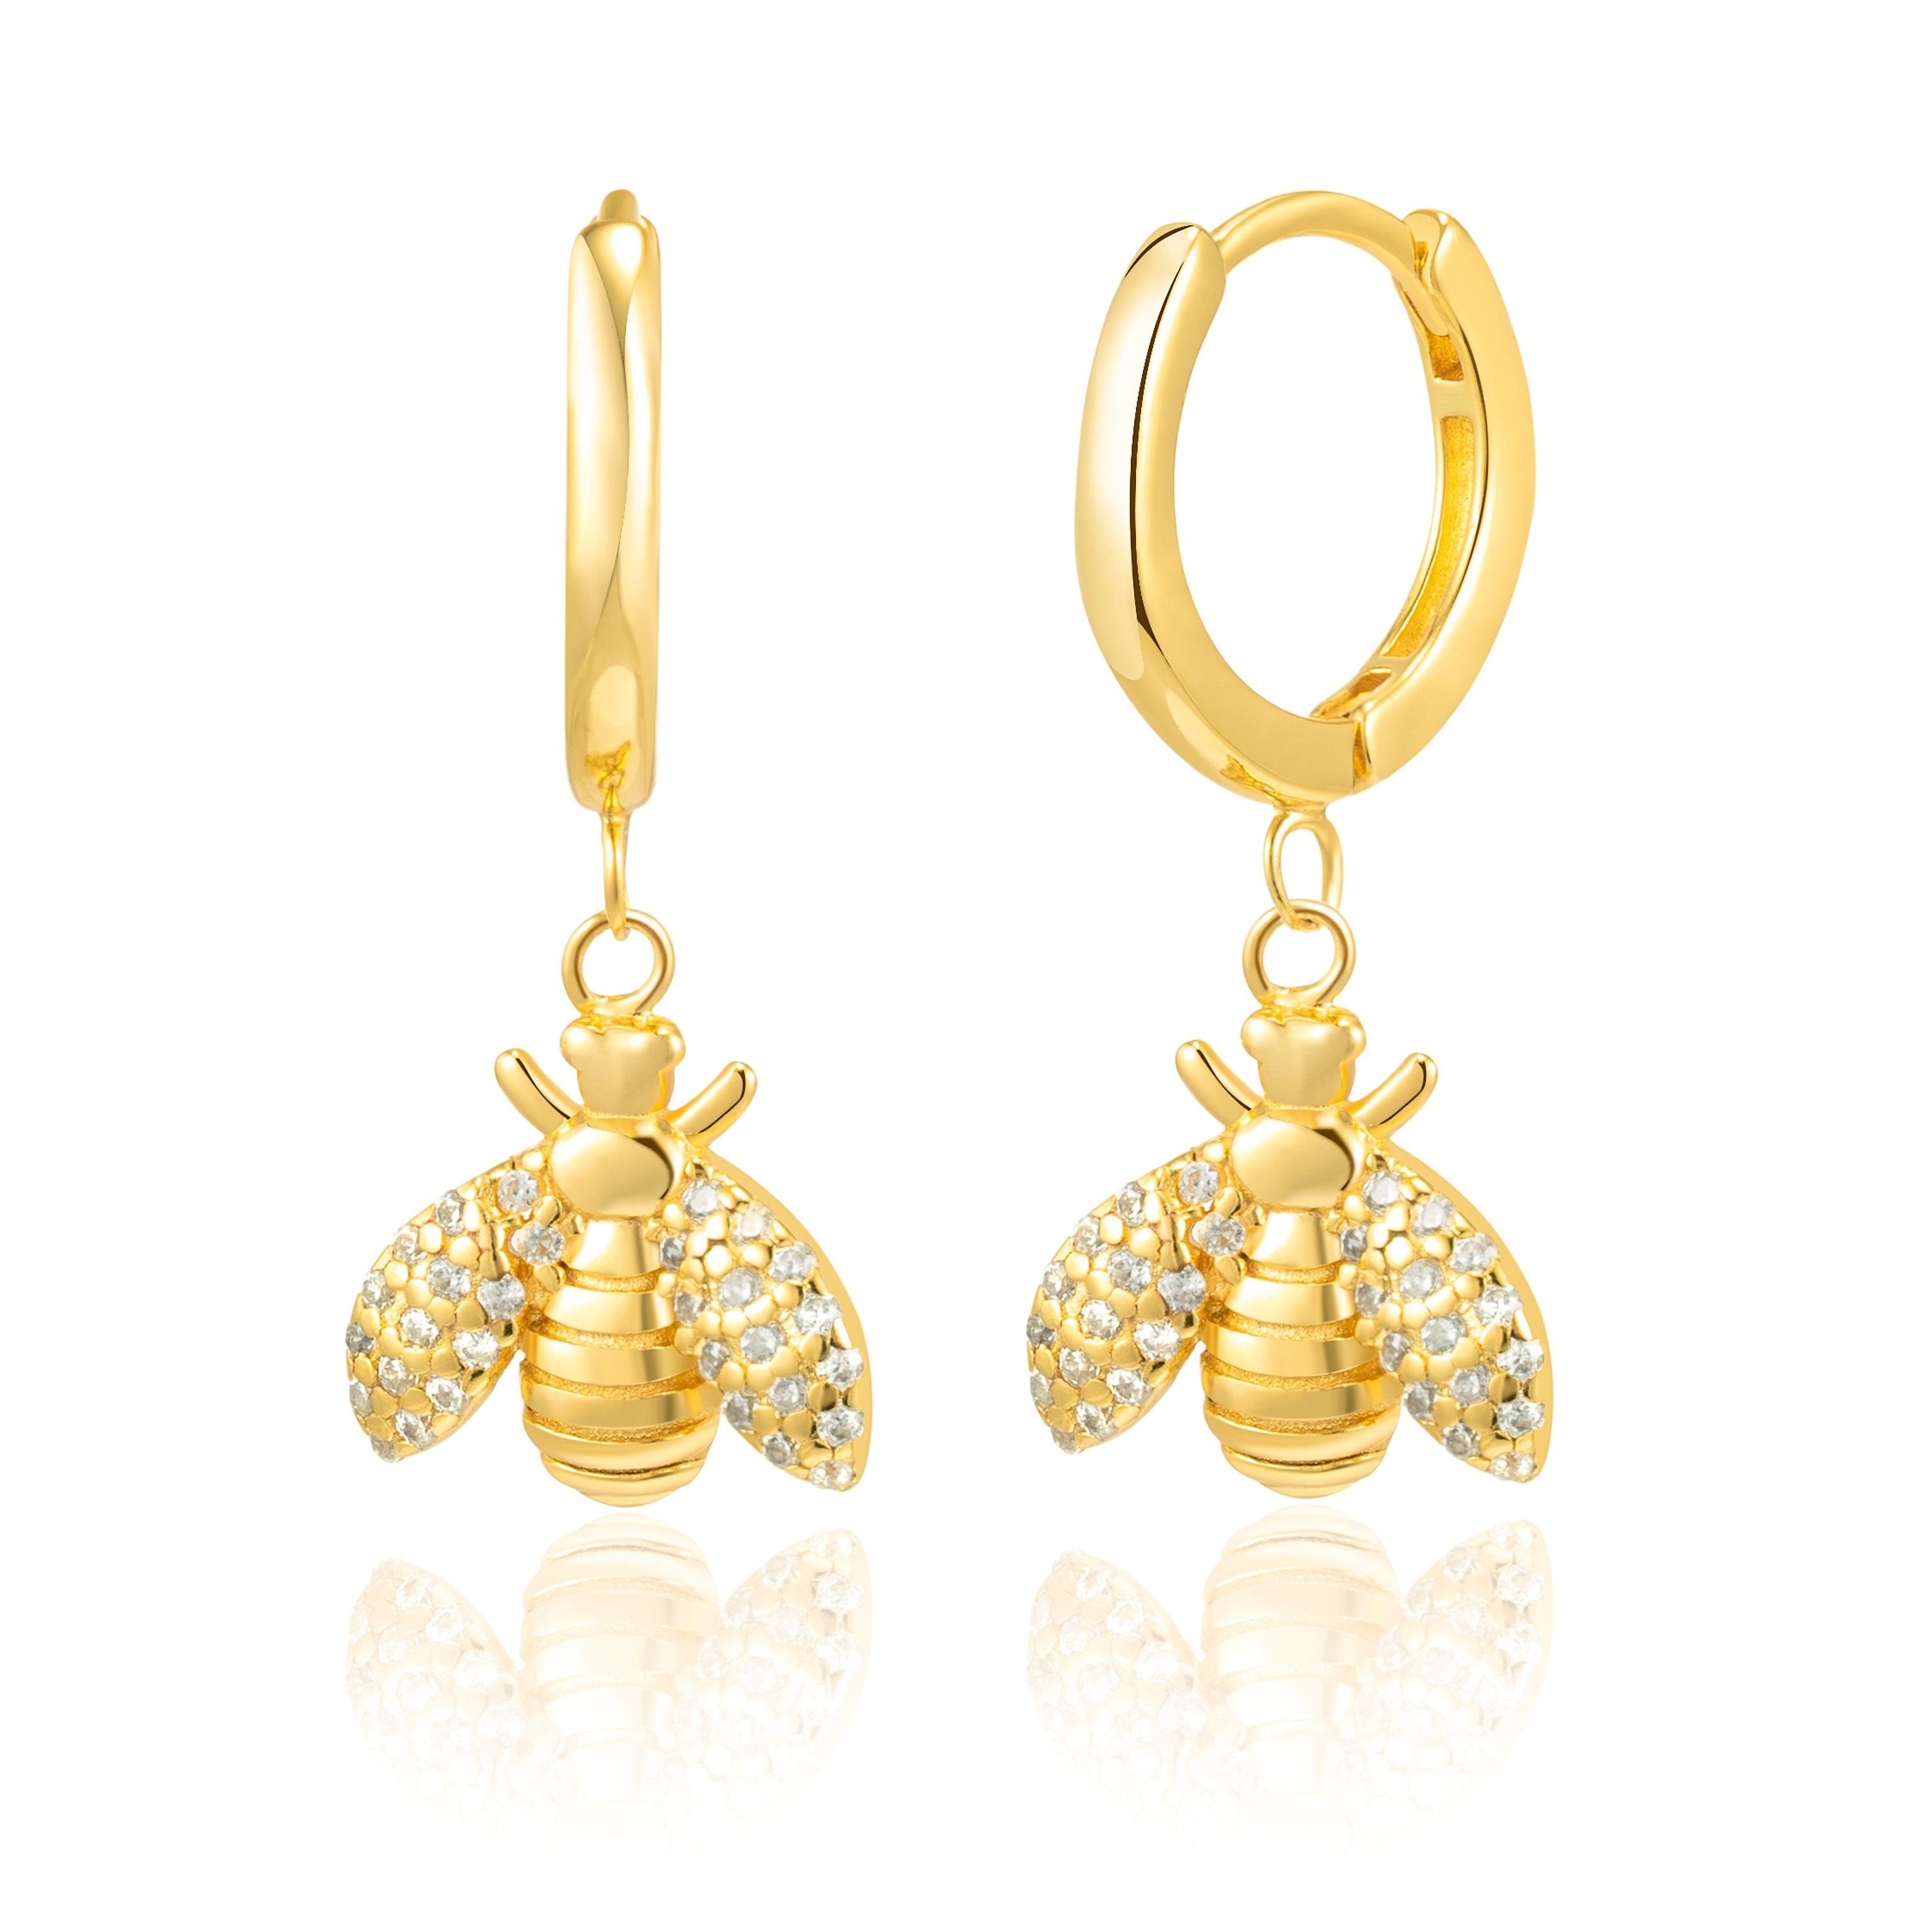 Ohrhänger Livorno, vergoldet, Zirkoniasteine Brandlinger Ohrringe Paar Bienen Weiße 925 Silber